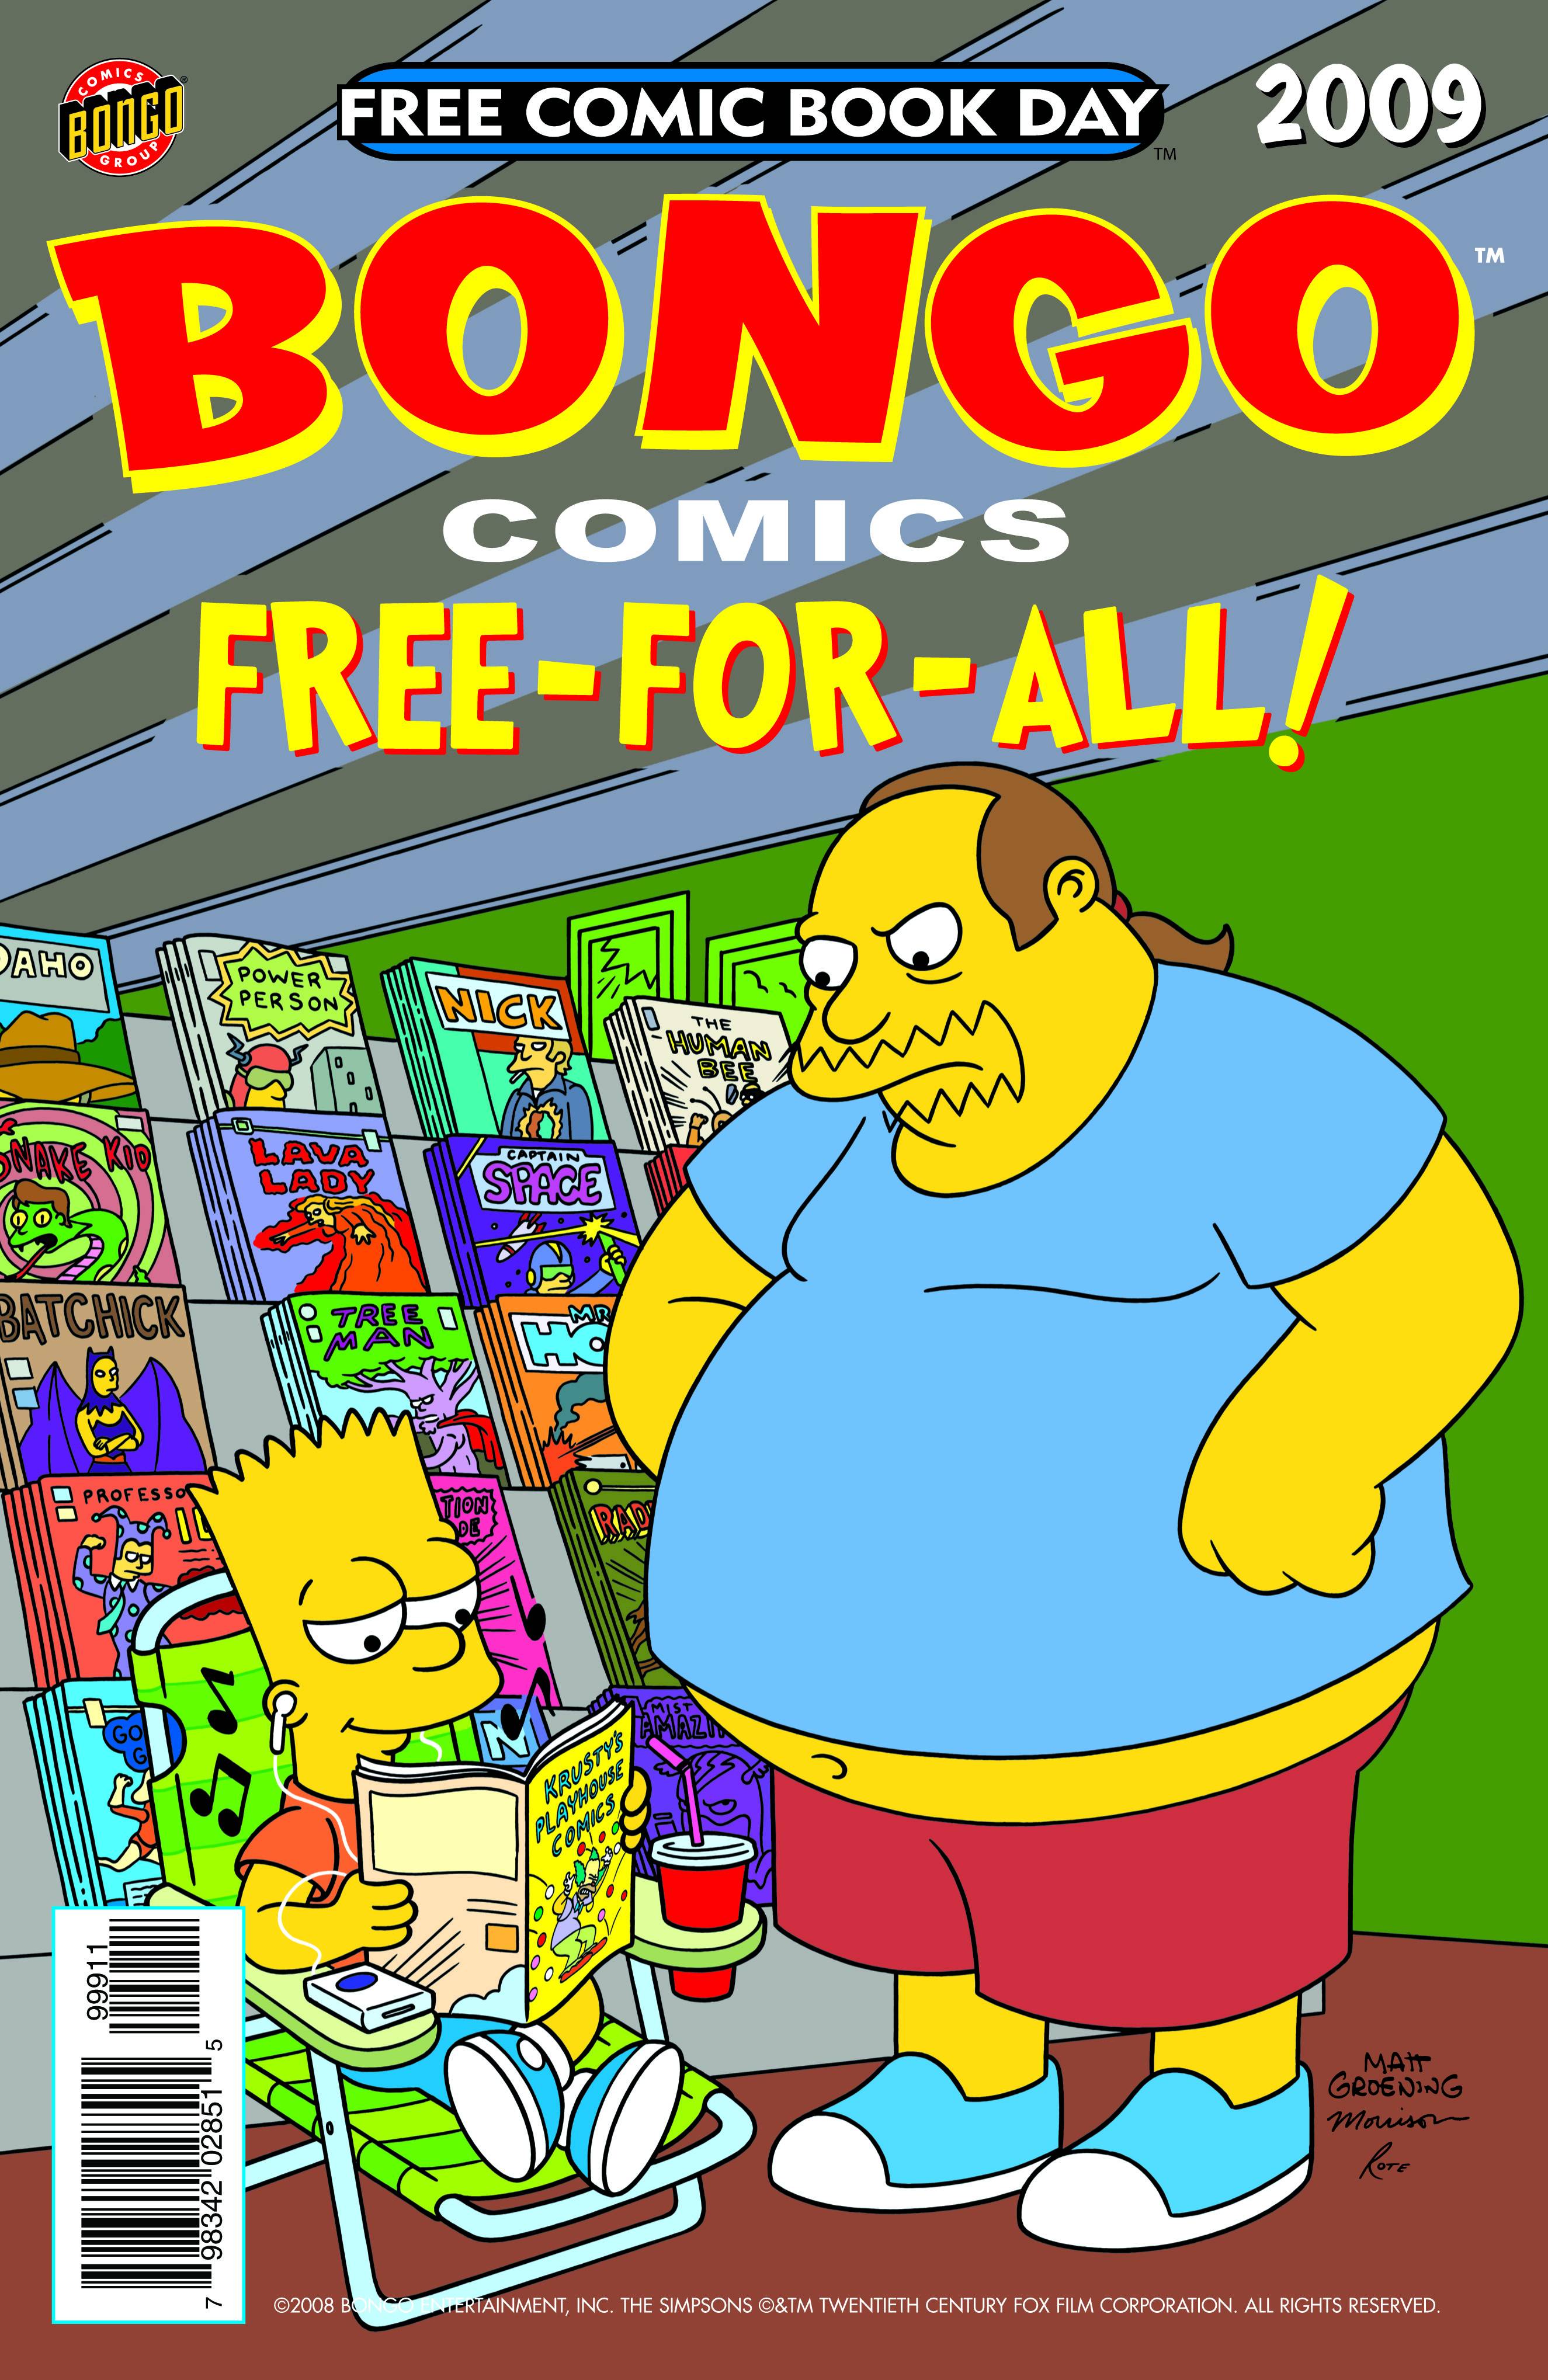 Bongo Comics Free-For-All! FCBD 2009 Comic Book